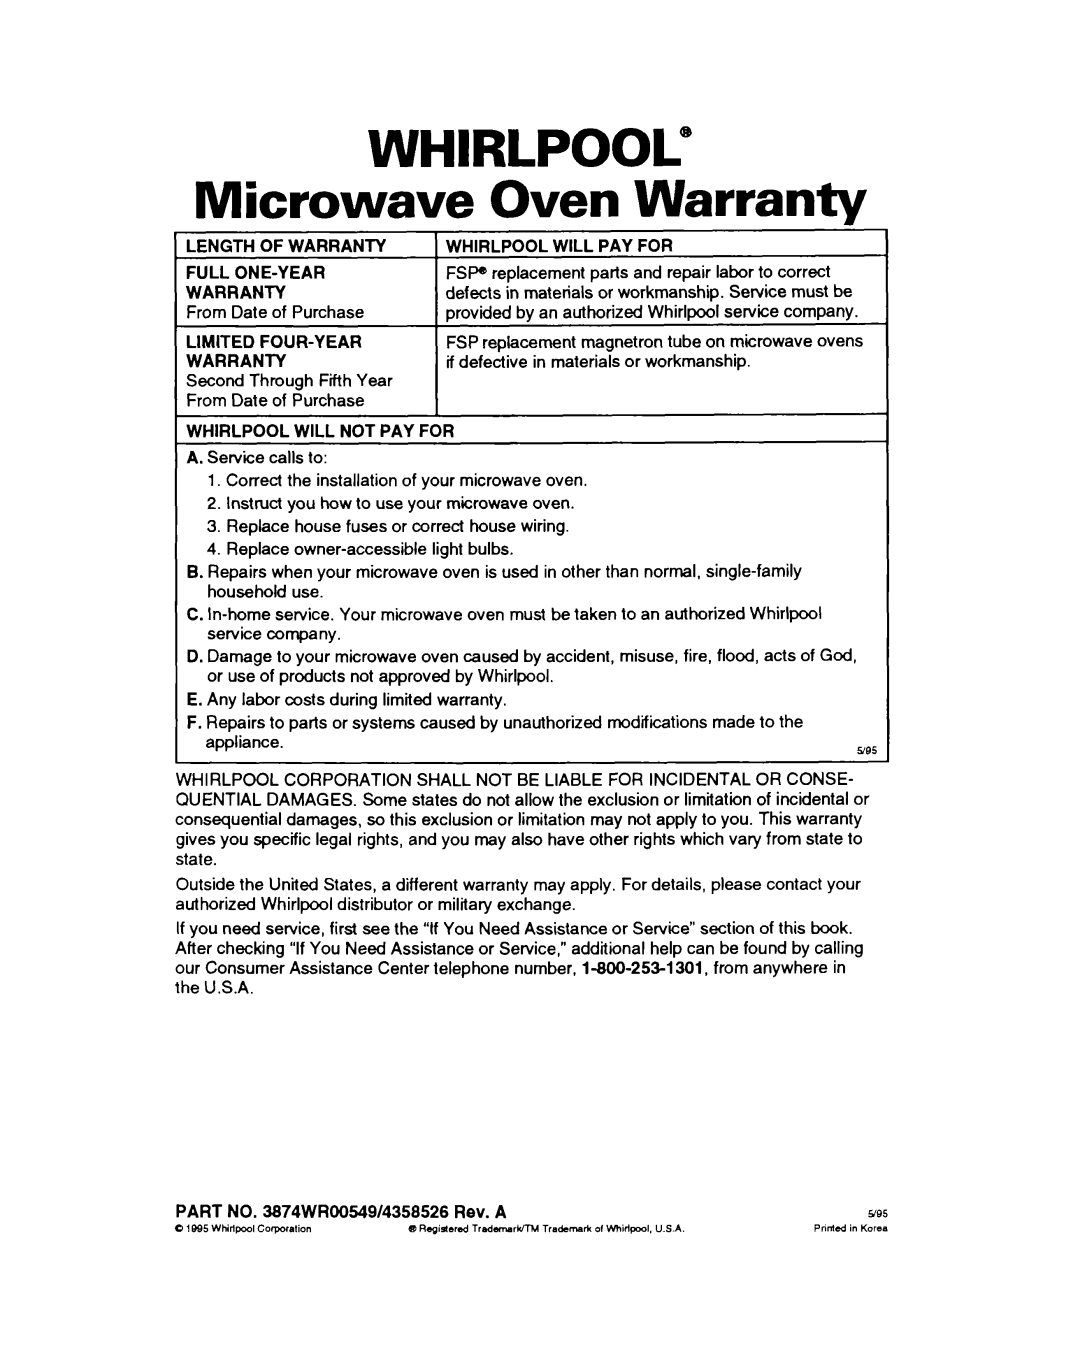 Whirlpool MT411IXB, MT2081XB warranty WHIRLPOOL” Microwave Oven Warranty 